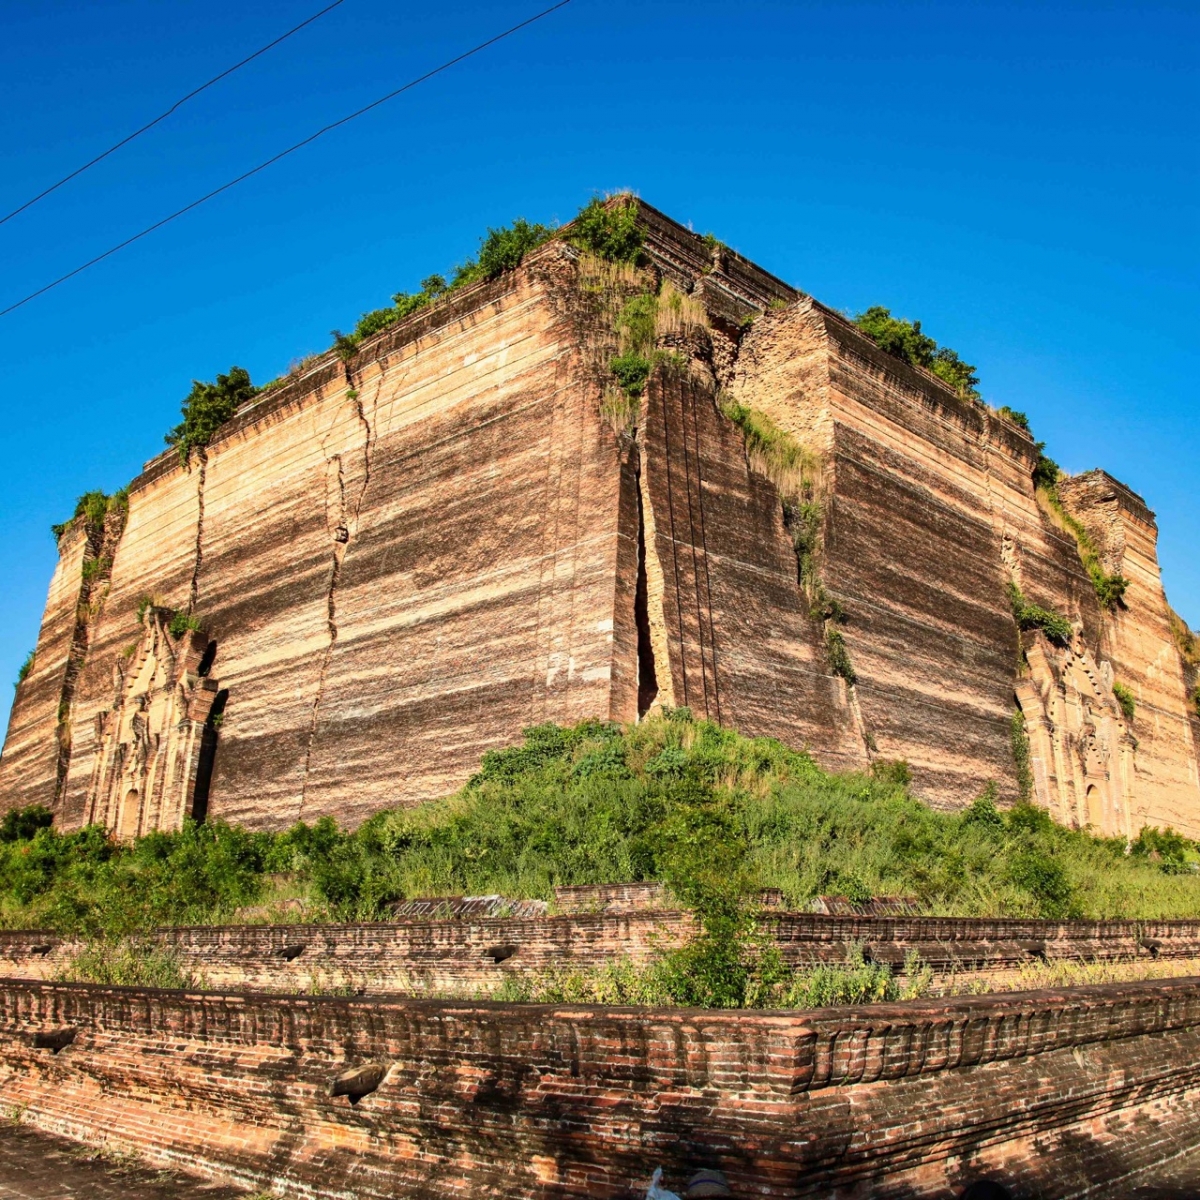 Гигантская ступа Мингун Пахтодавги Пайя в Мингуне, Мьянма, бывшая Бирма.